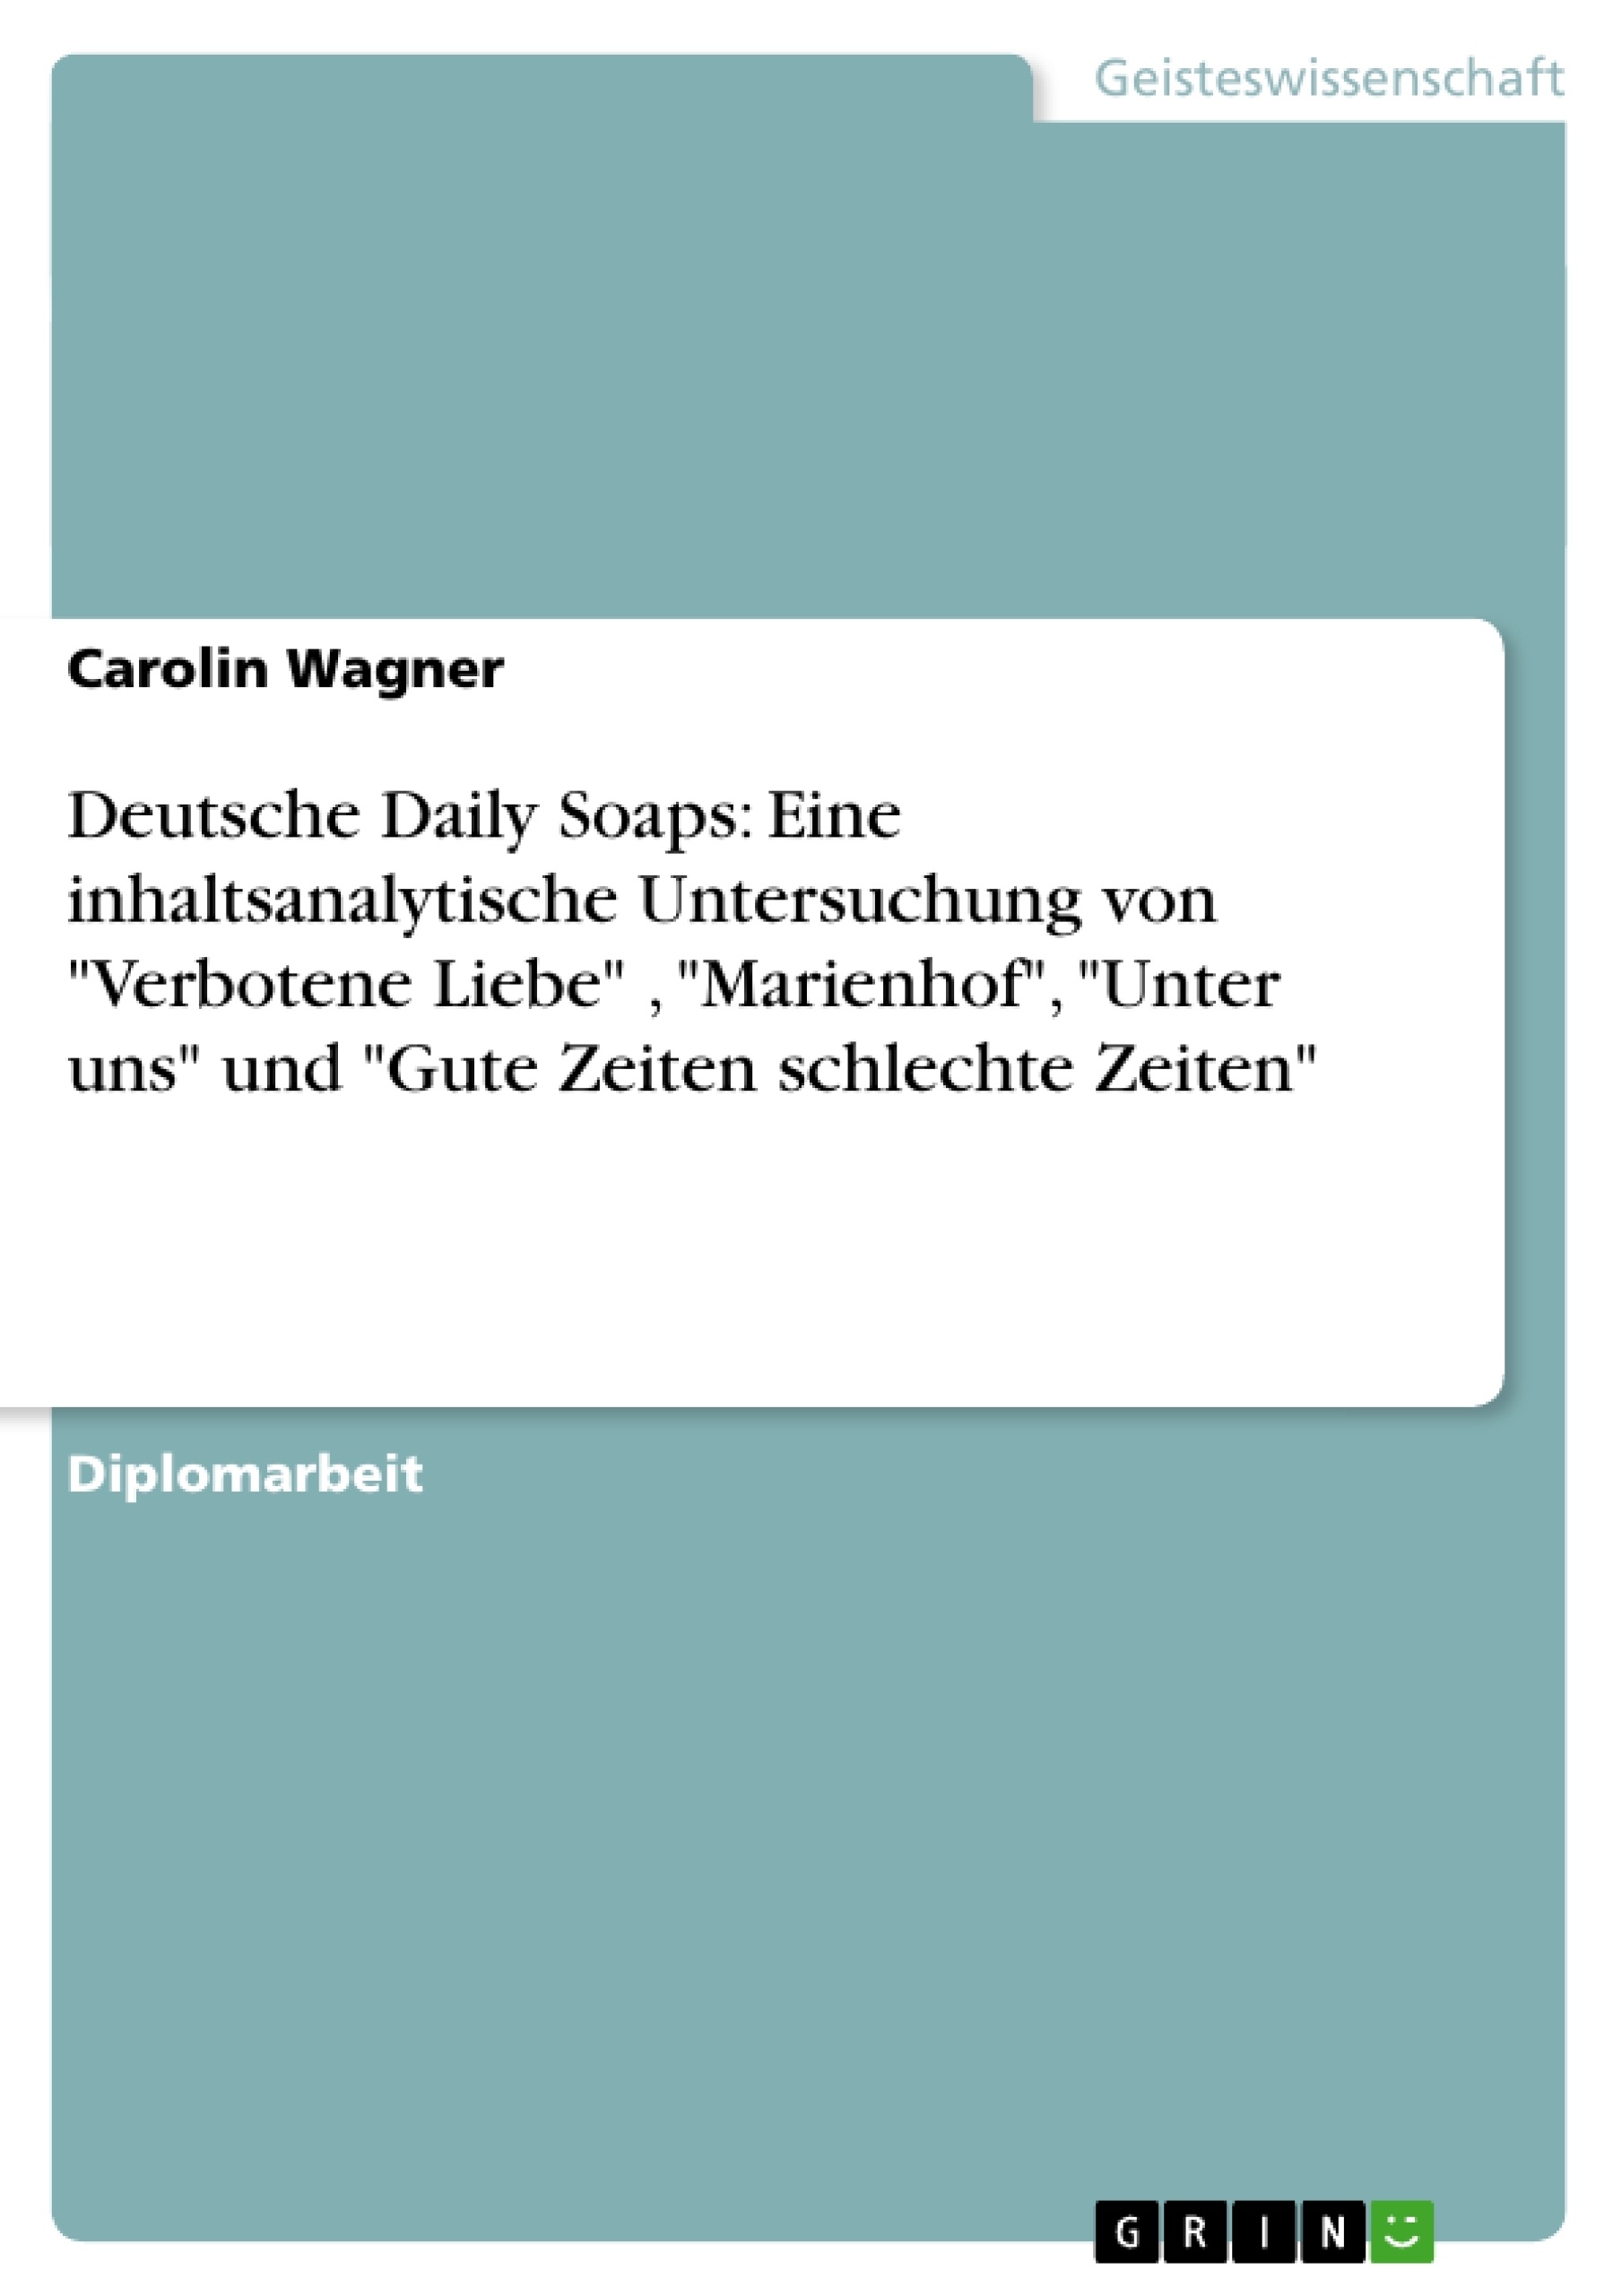 Titel: Deutsche Daily Soaps: Eine inhaltsanalytische Untersuchung von "Verbotene Liebe" , "Marienhof", "Unter uns" und "Gute Zeiten schlechte Zeiten"